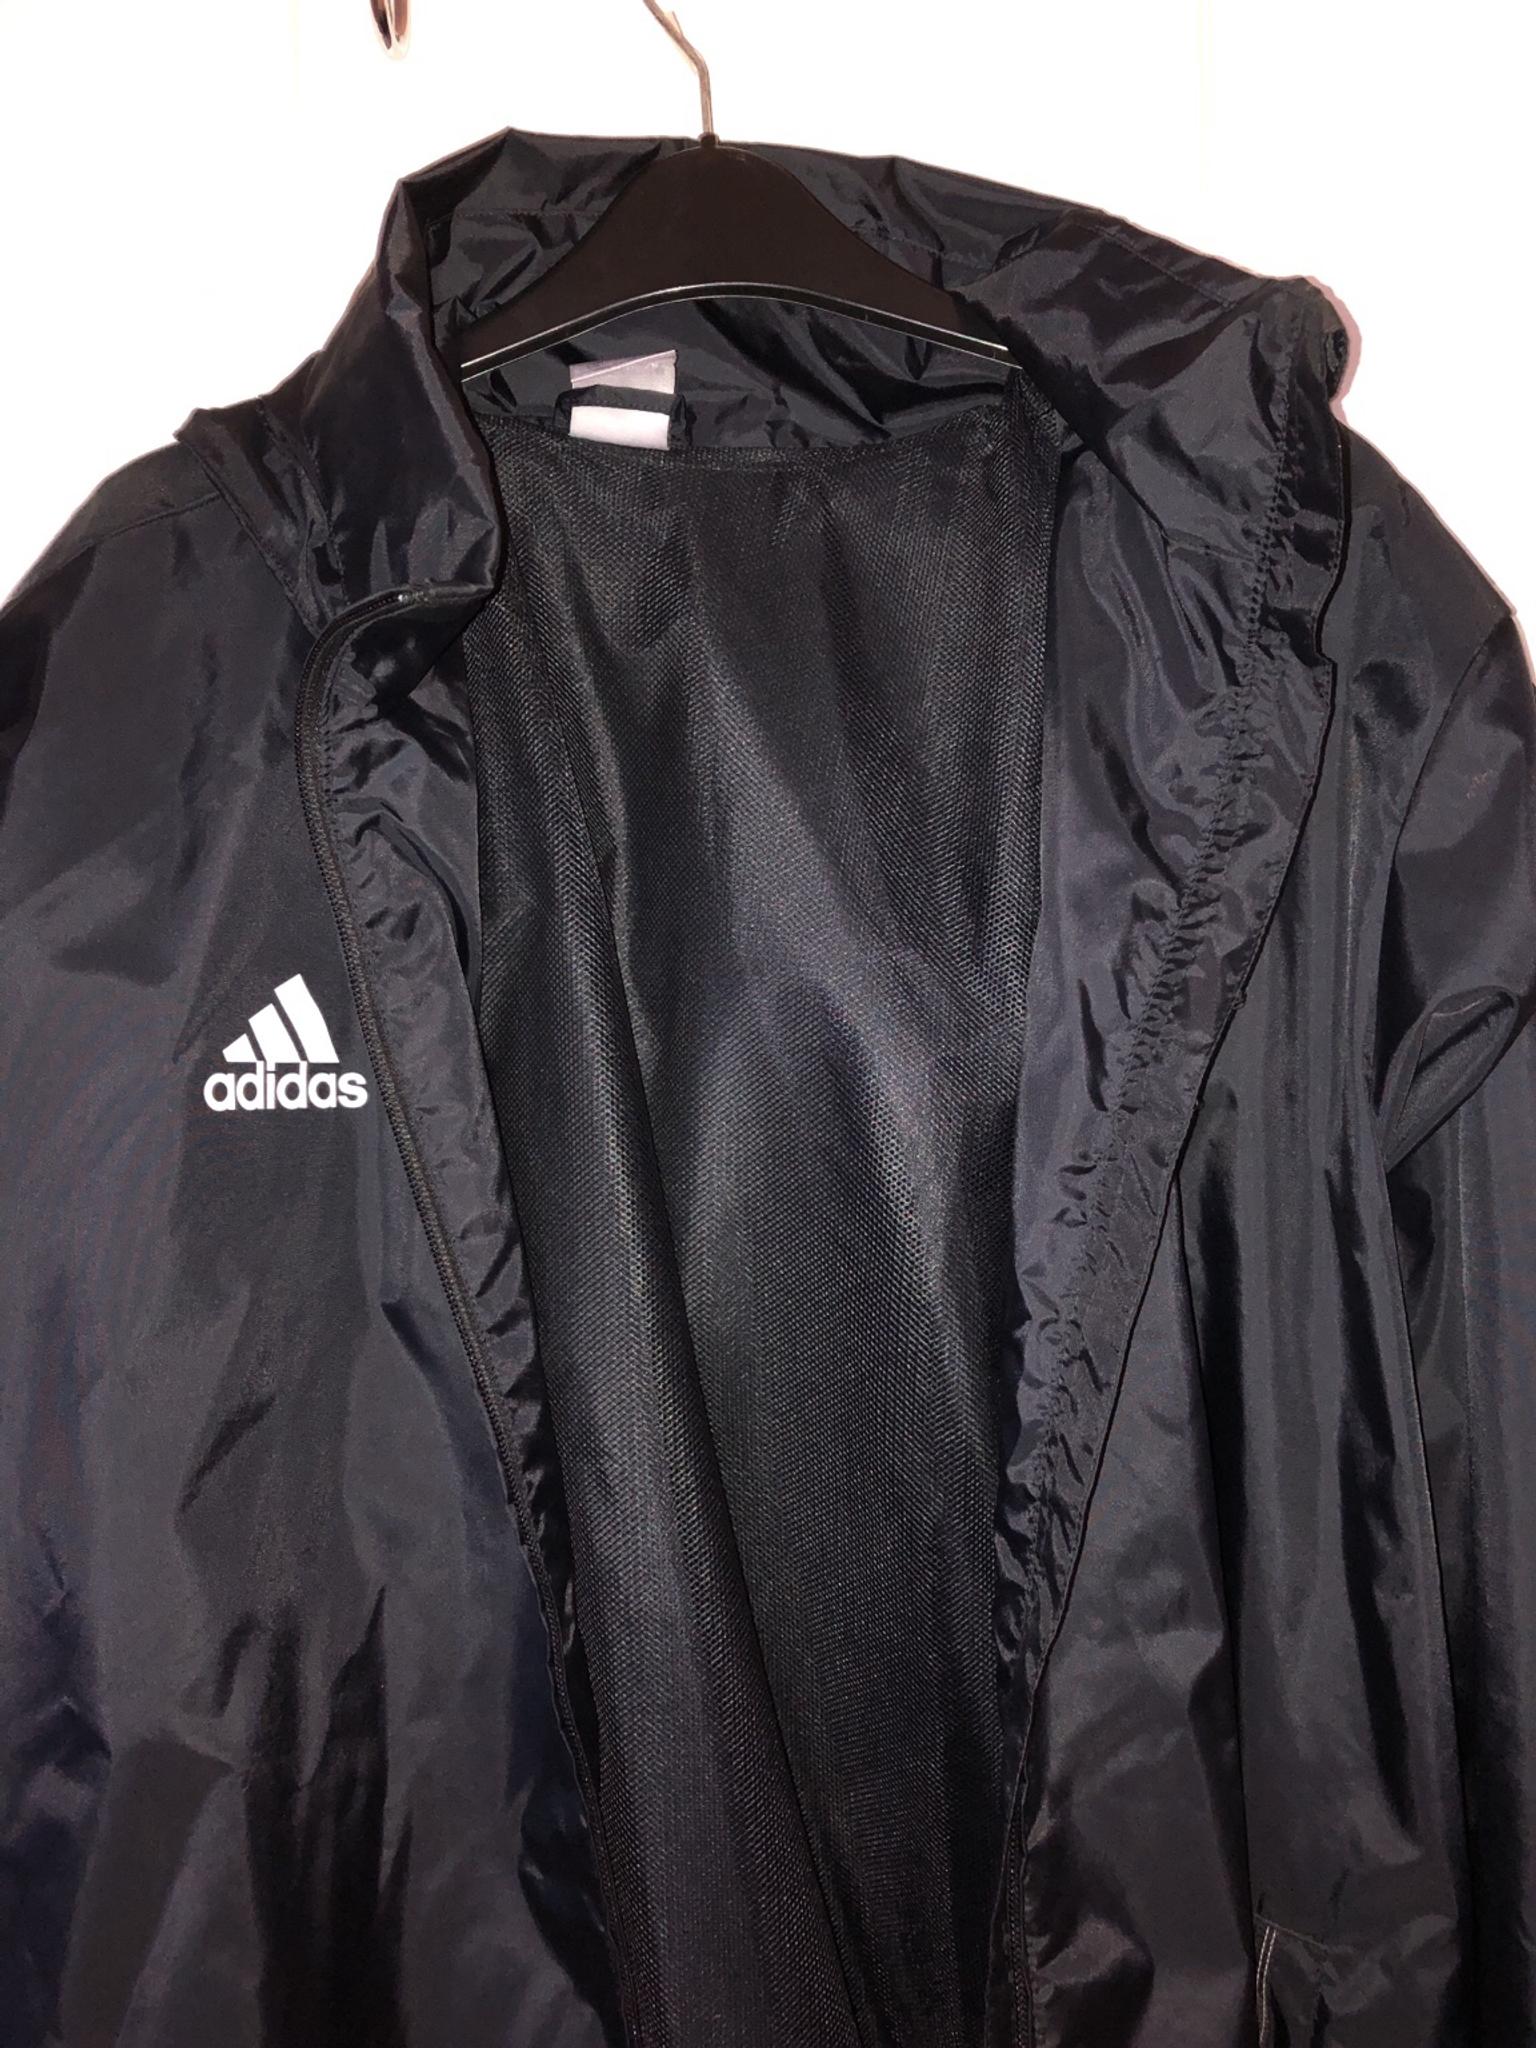 Men's black Adidas rain coat large in 